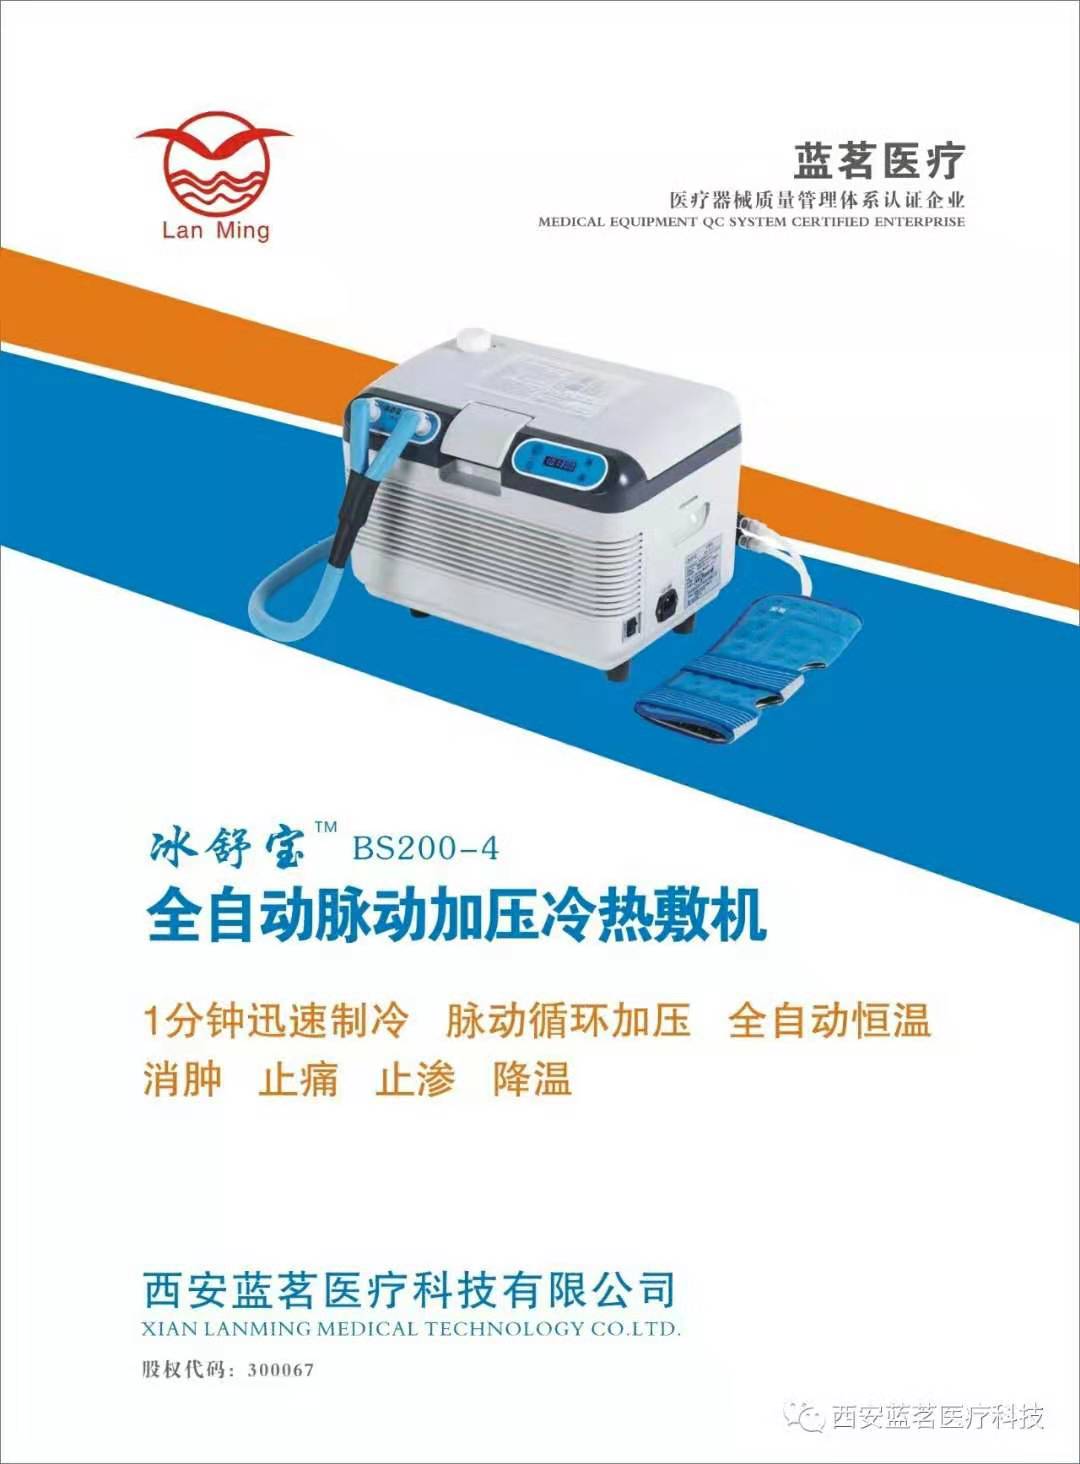 全自动加压冷热敷机 医用物理控温仪生产厂家  西安蓝茗医疗科技有限公司